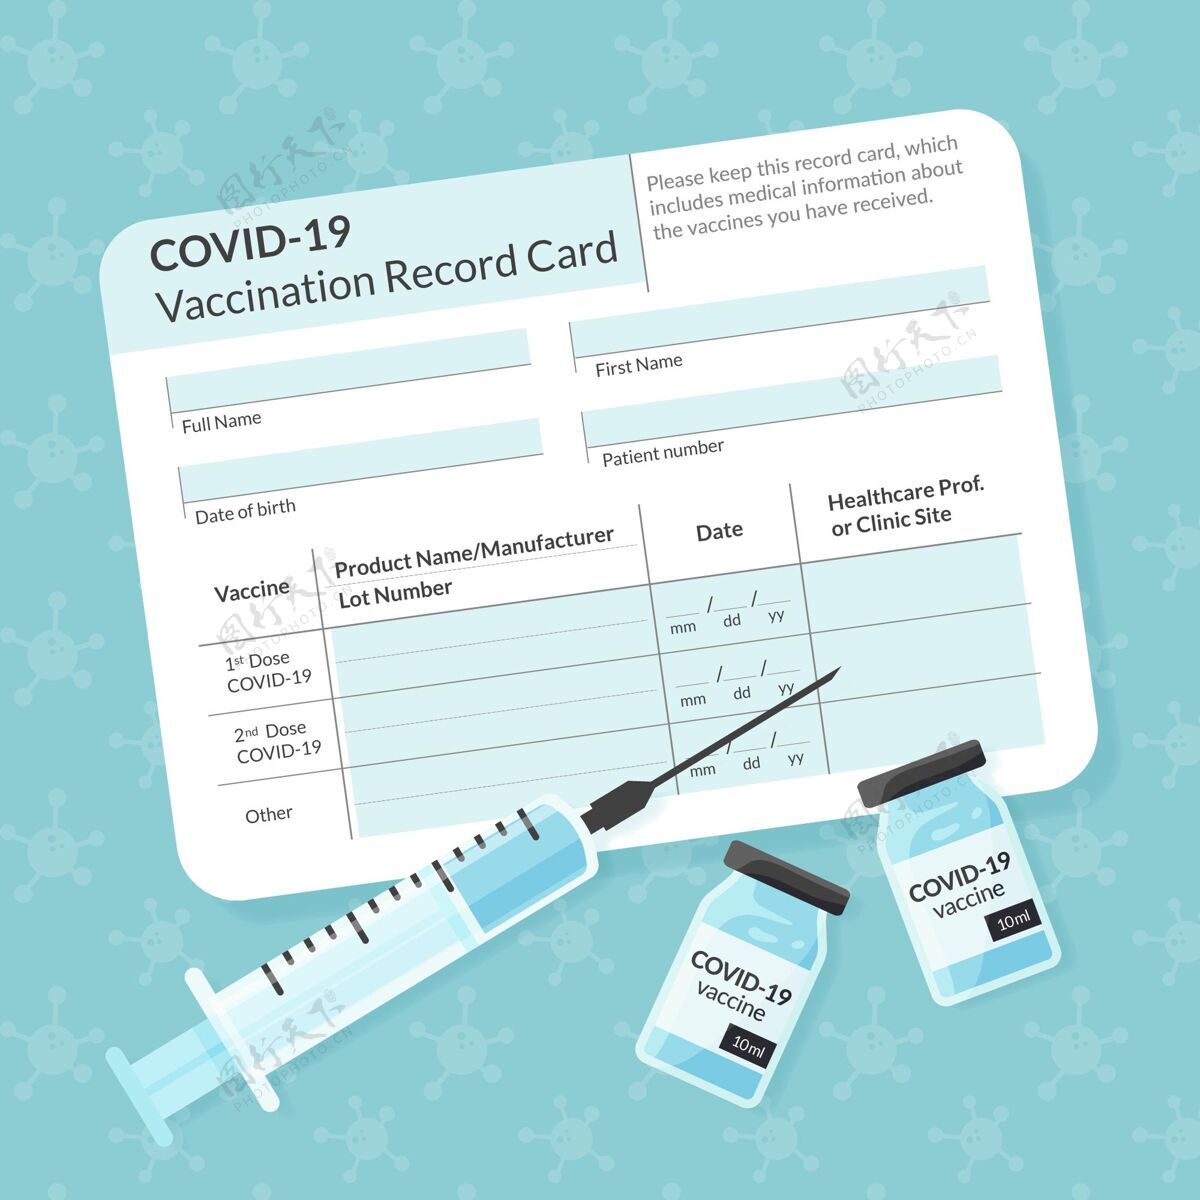 平面设计有机平板冠状病毒疫苗接种记录卡模板手绘疫苗流行病